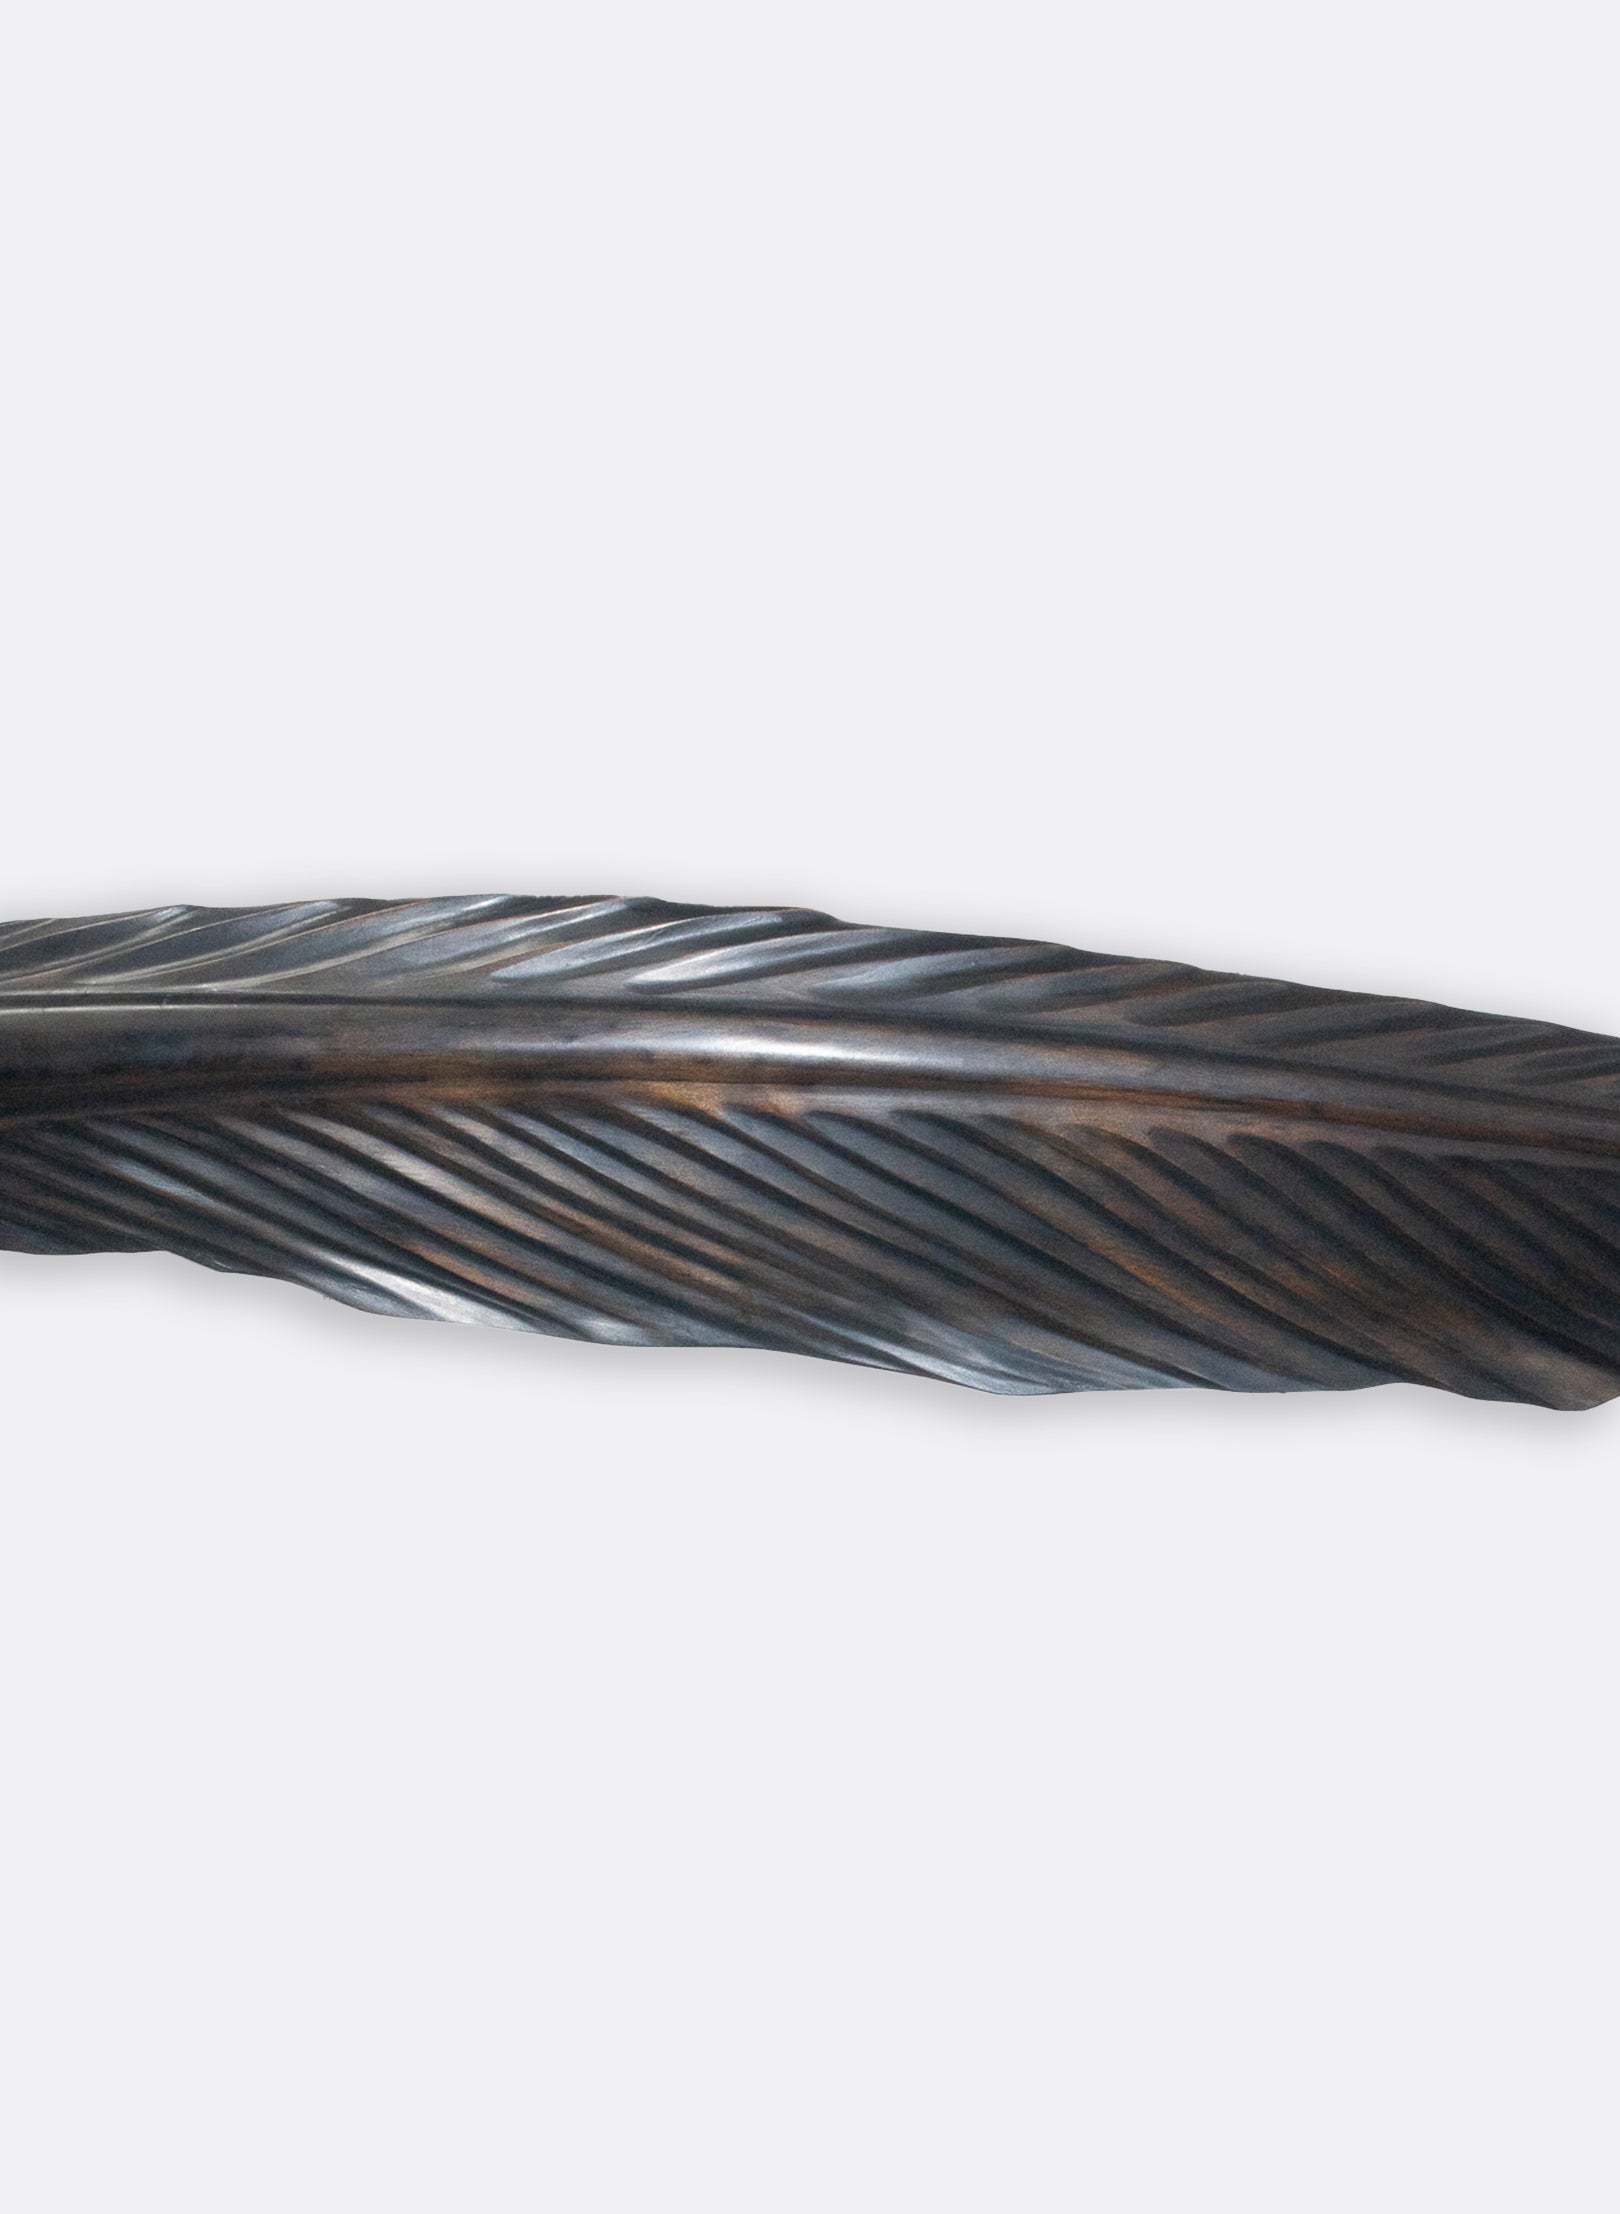 Tui Feather 1225mm - Black Swamp Kauri